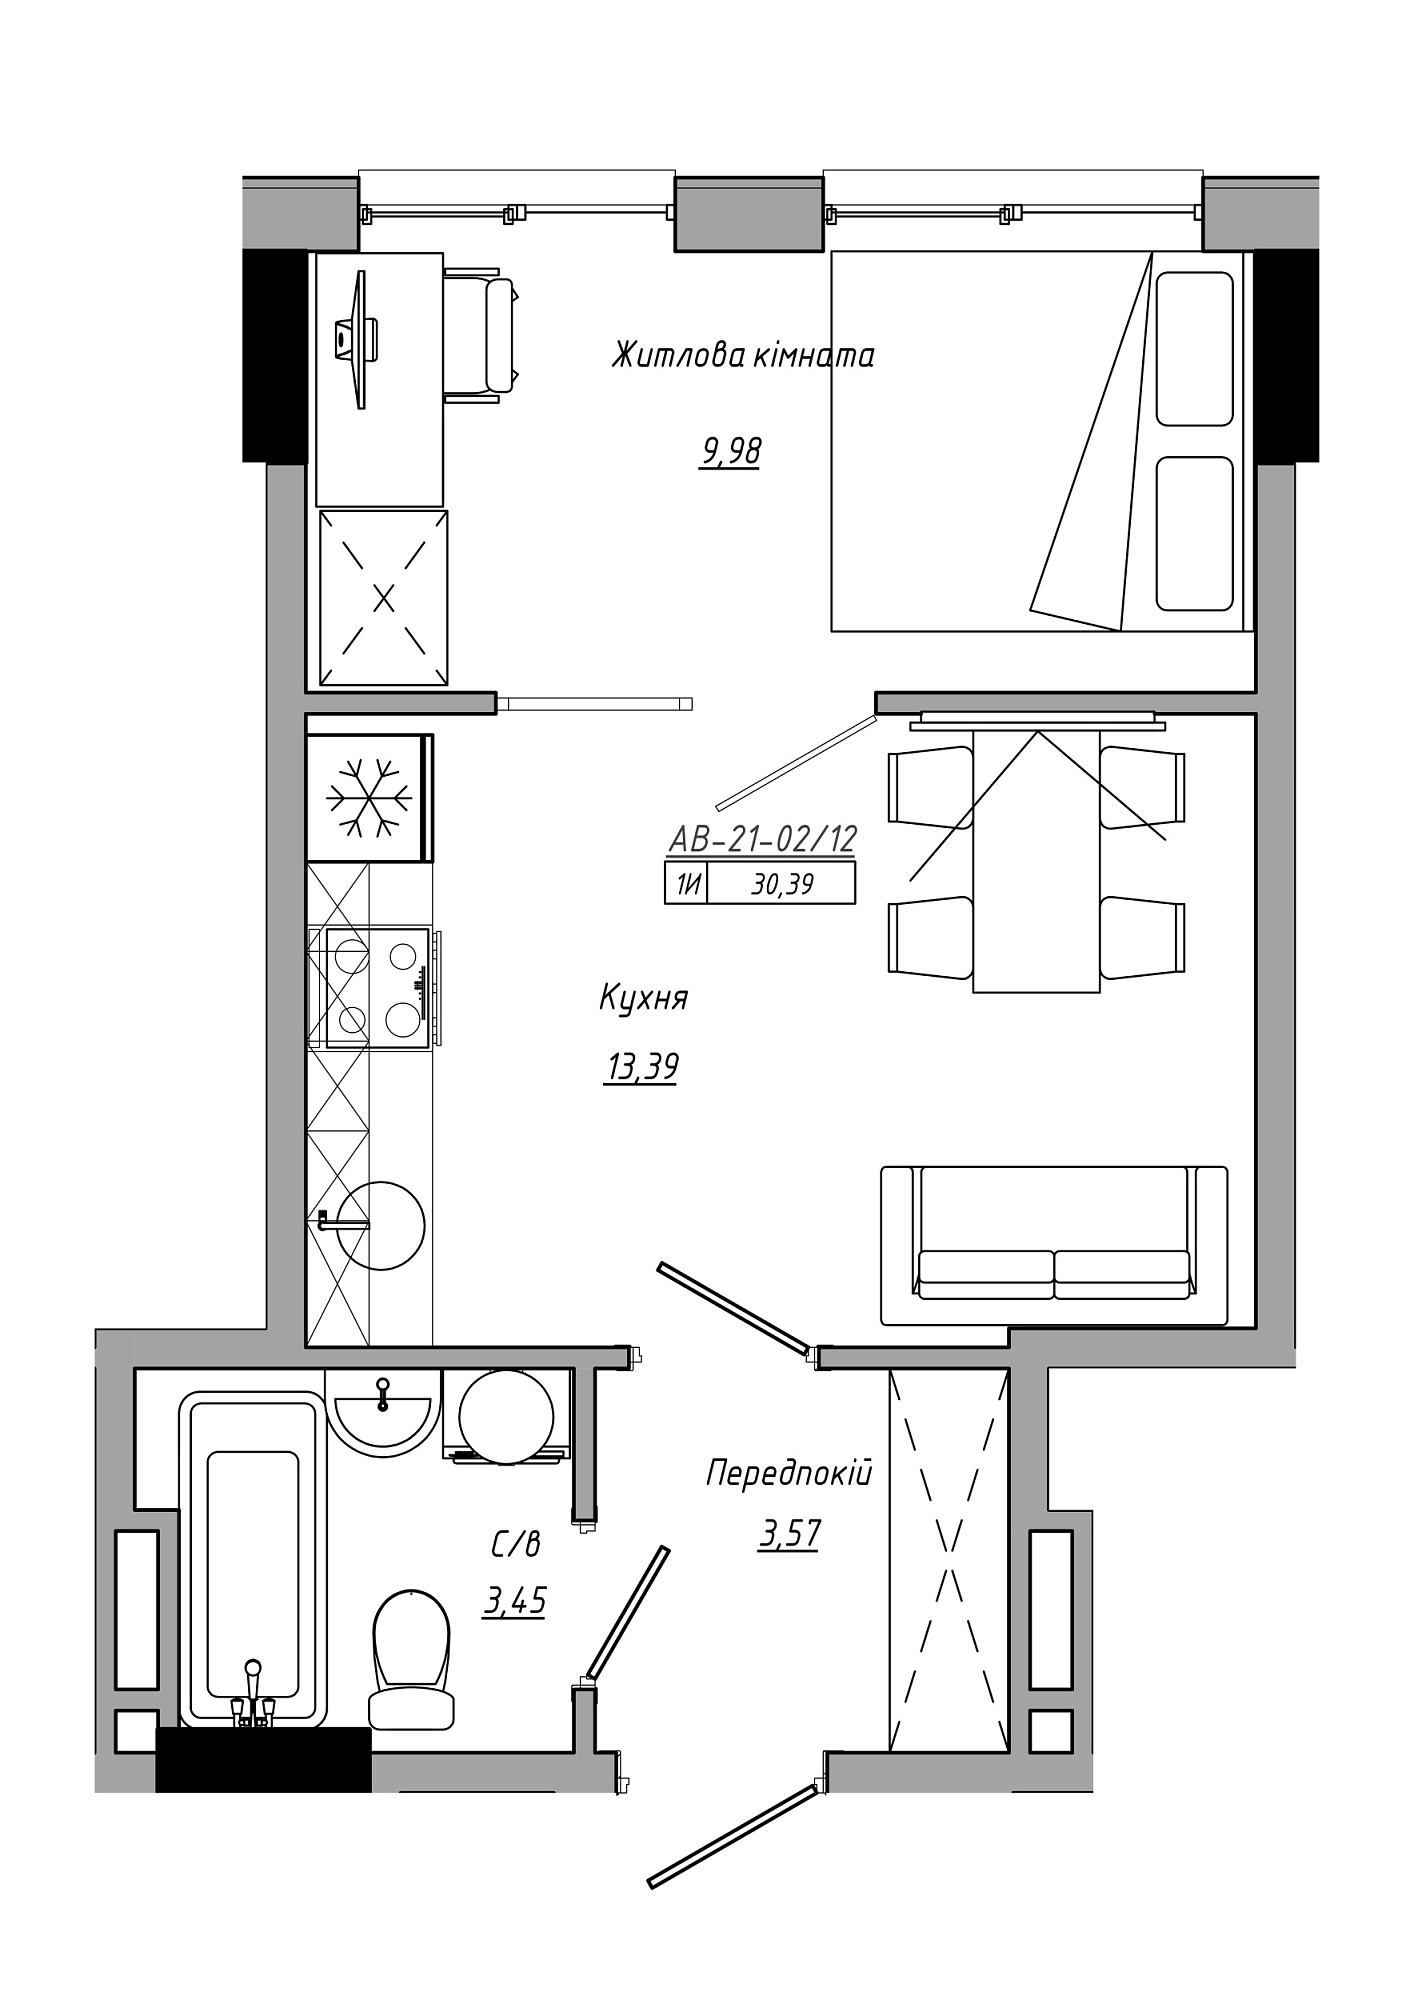 Планування 1-к квартира площею 30.39м2, AB-21-02/00012.